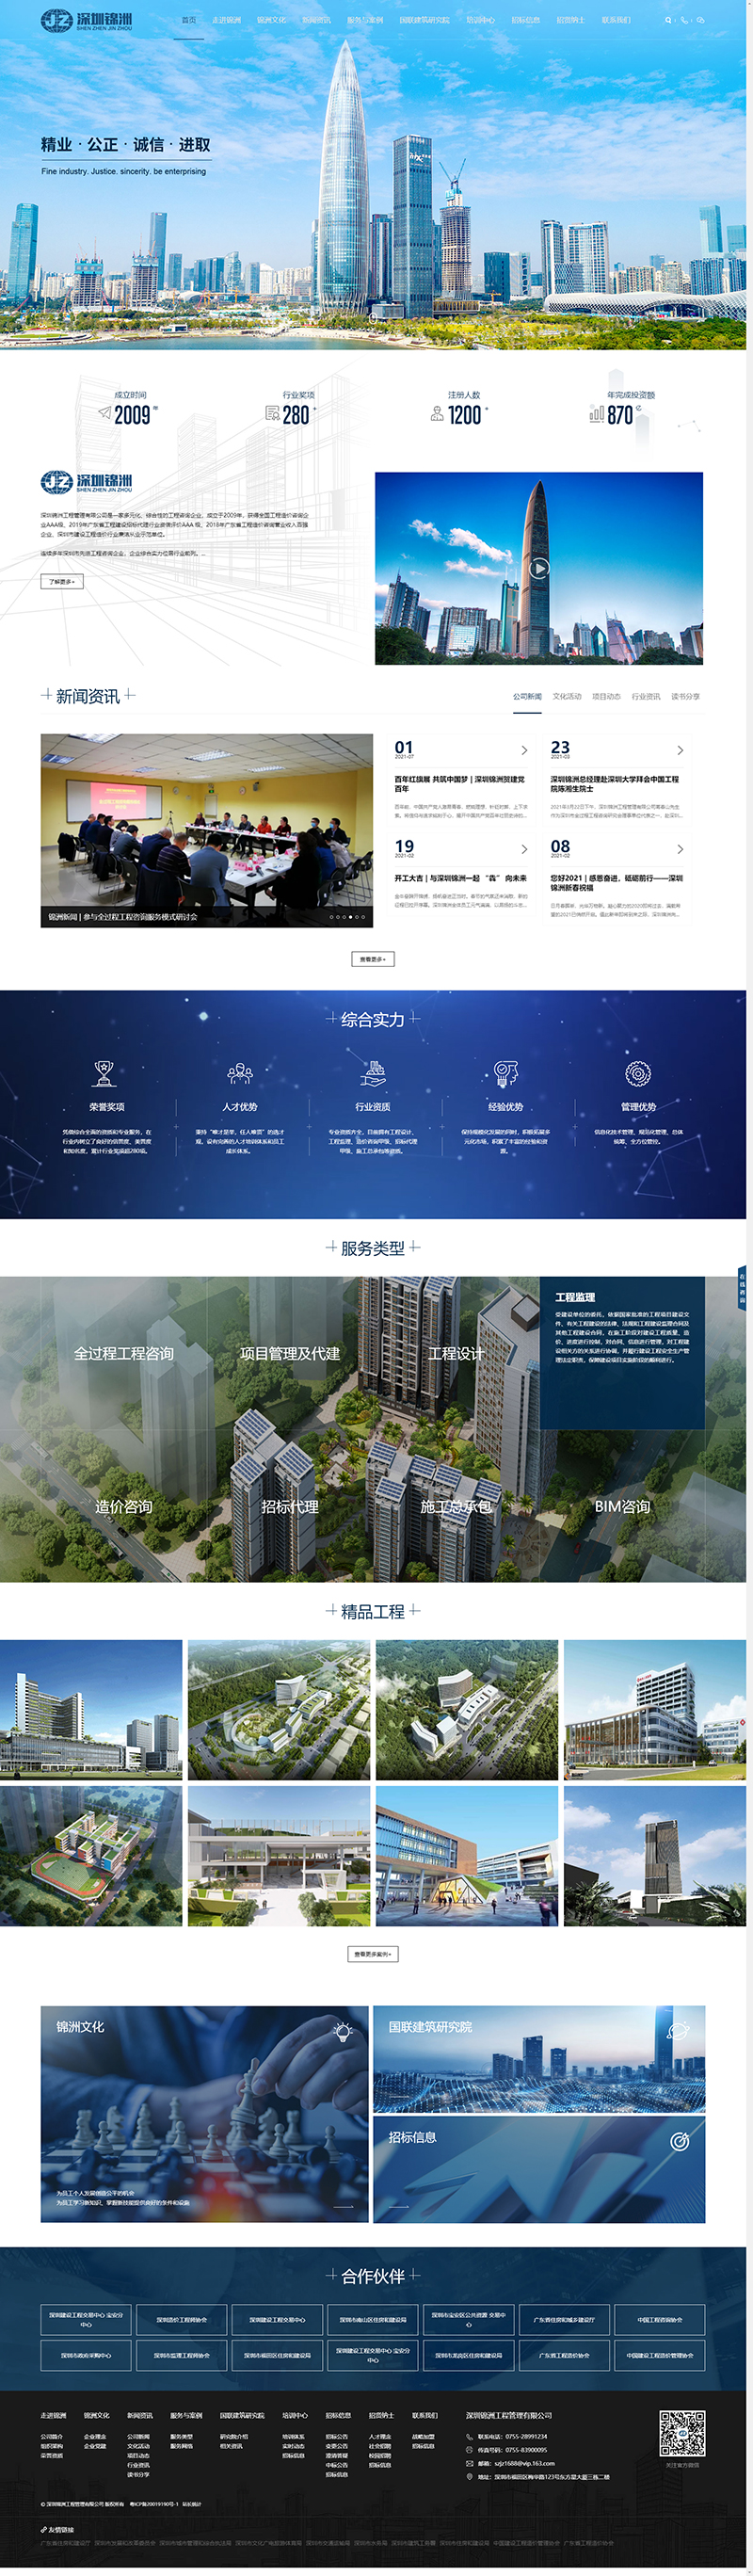 深圳网站建设公司国人伟业帮助锦洲工程管理升级了品牌形象官网，提升了公司互联网品牌形象，扩大了品牌影响力。